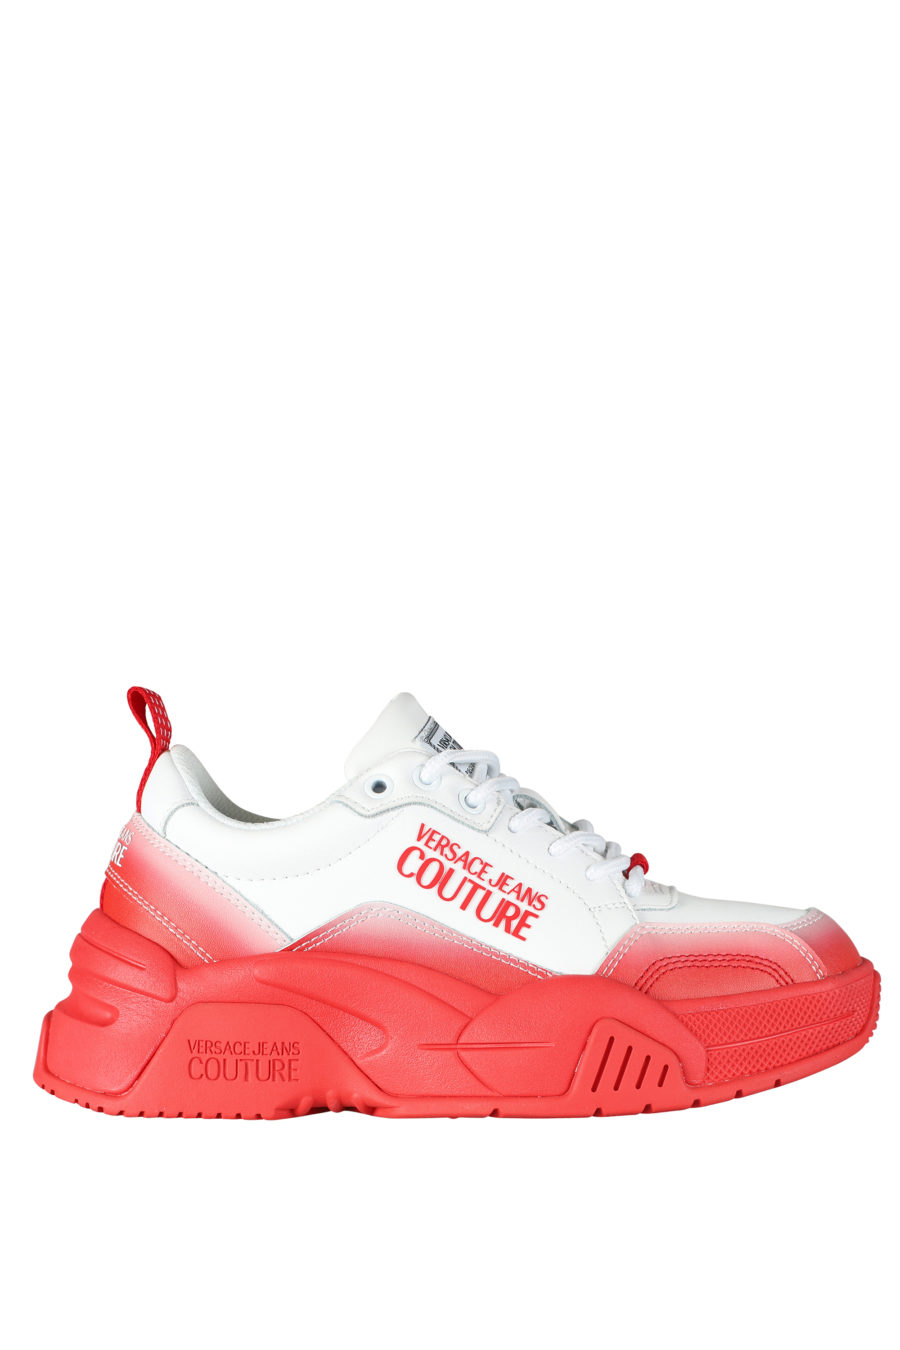 Zapatillas blancas con degrade rojo "stargaze" - IMG 5265